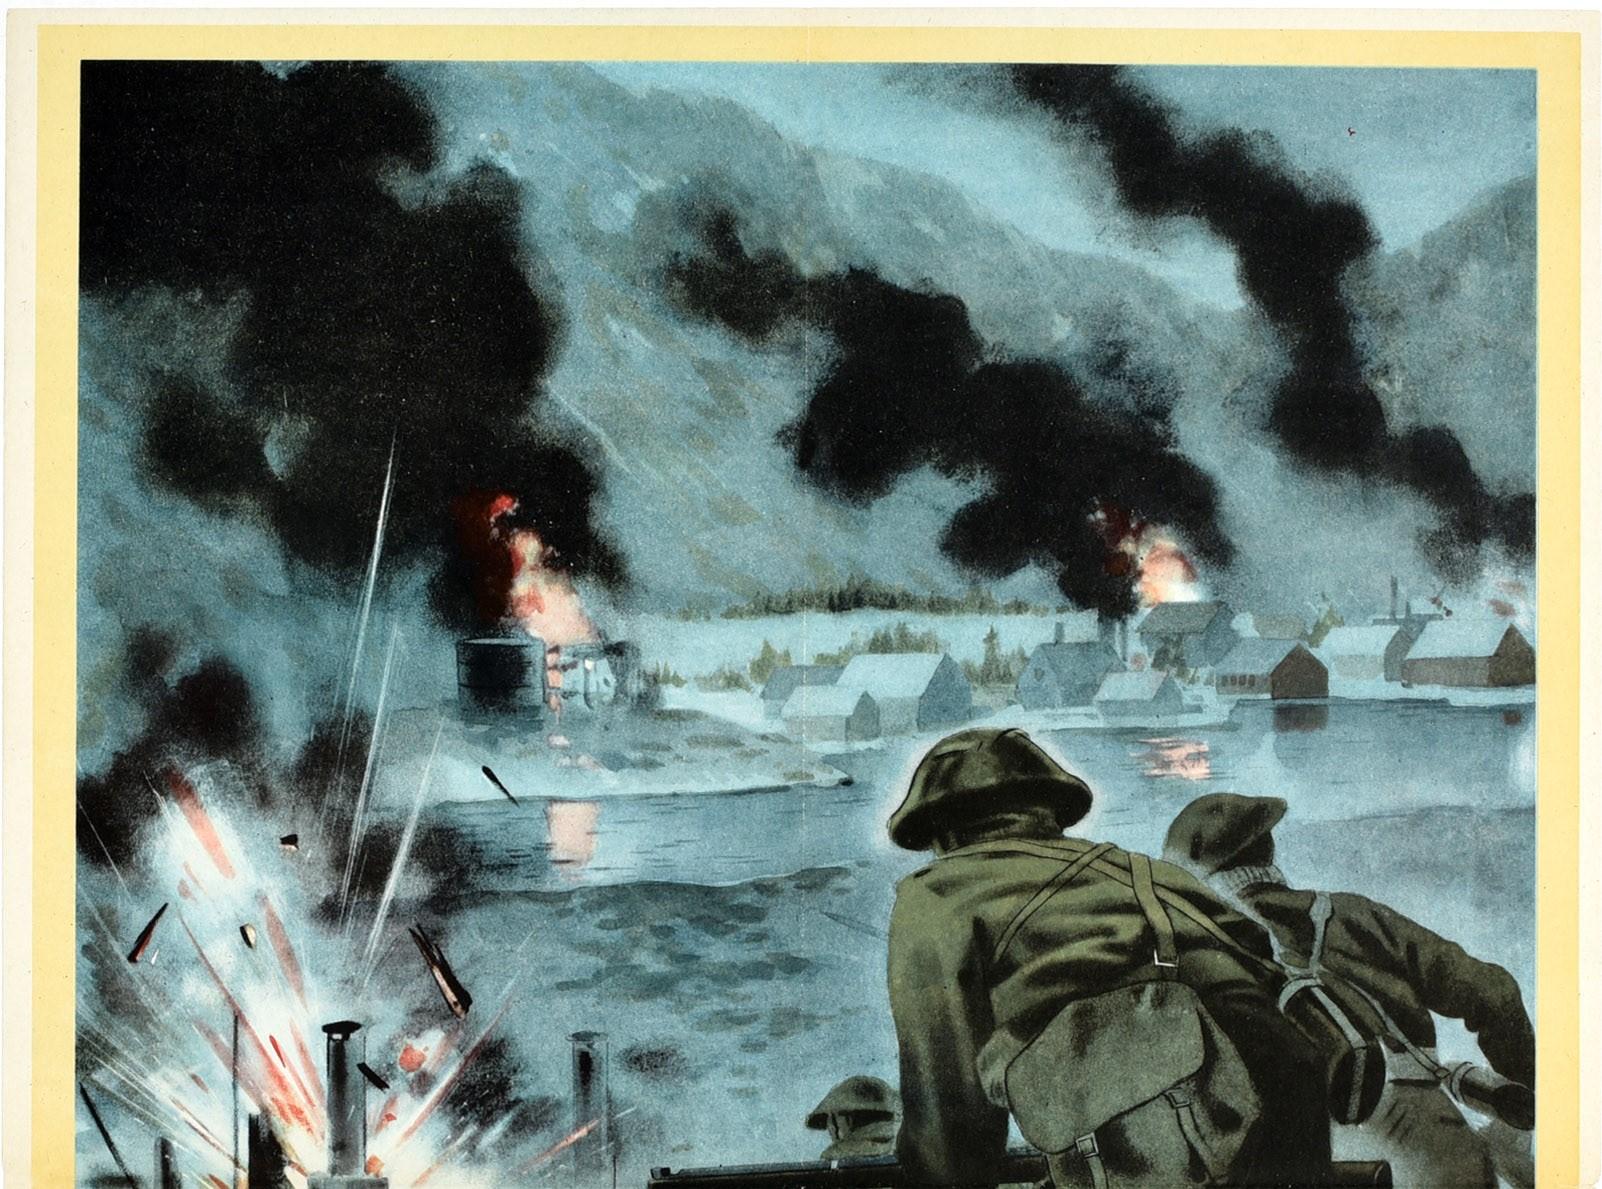 Originales Propagandaposter aus dem Zweiten Weltkrieg - Back Them Up! Dynamische Illustration einer Kampfszene mit britischen Soldaten mit Bajonettgewehren, die einen Hügel hinunter in Richtung eines von den Deutschen gehaltenen Hafens in Norwegen